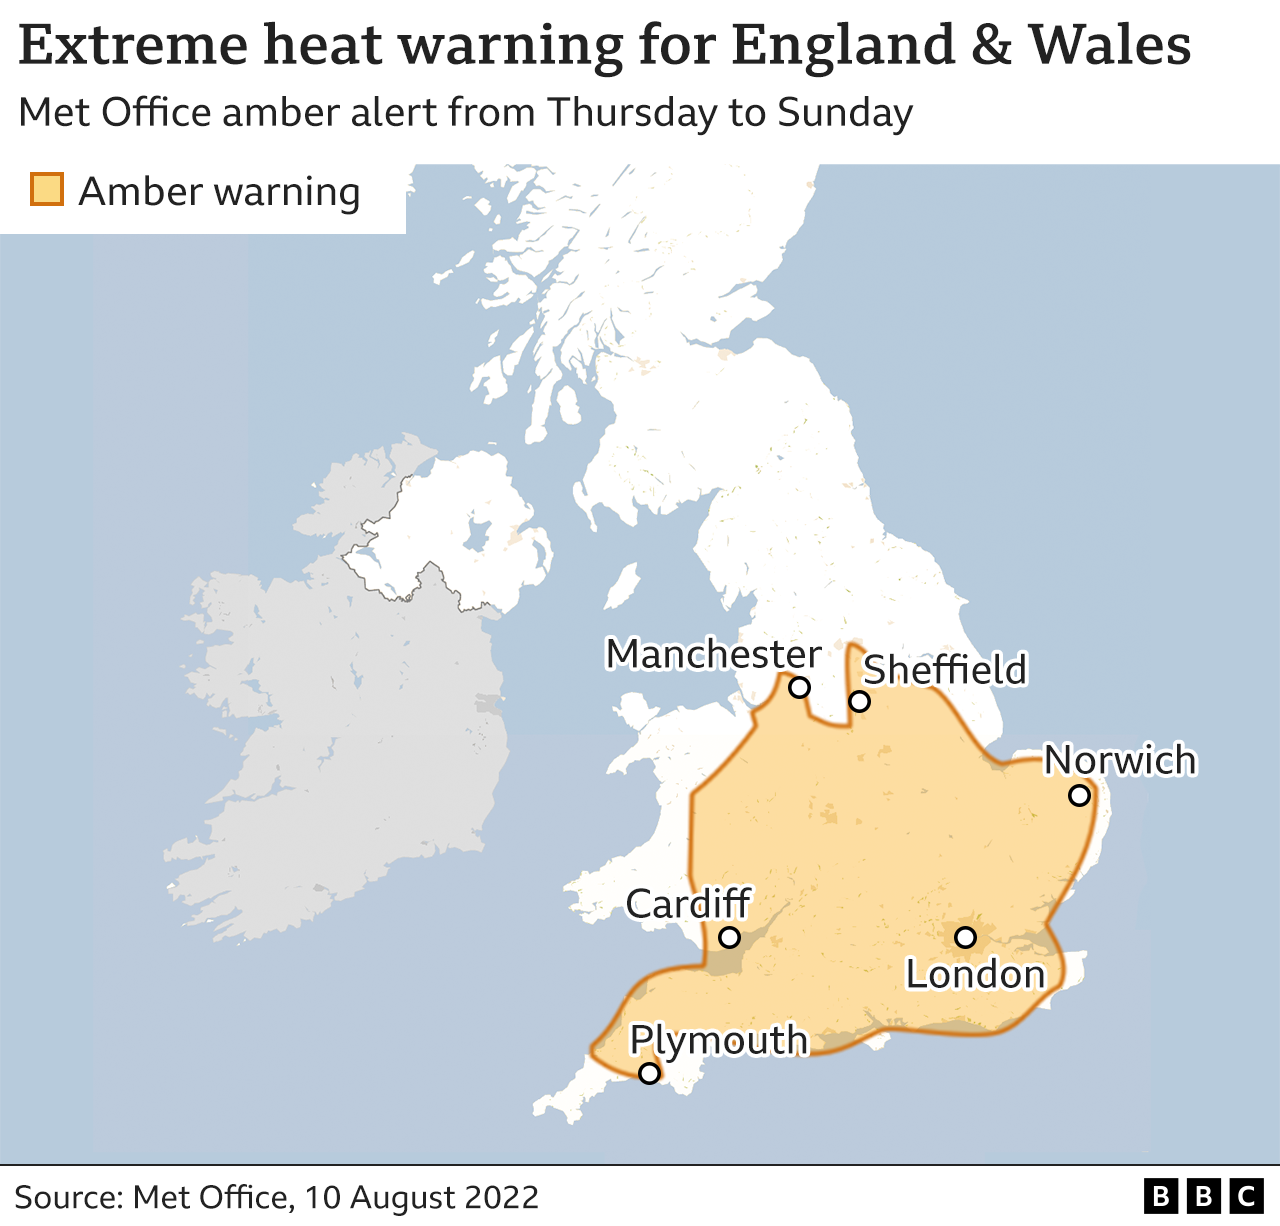 Карта, показывающая районы Англии и Уэльса, охваченные янтарным предупреждением об экстремальной жаре от Метеобюро.